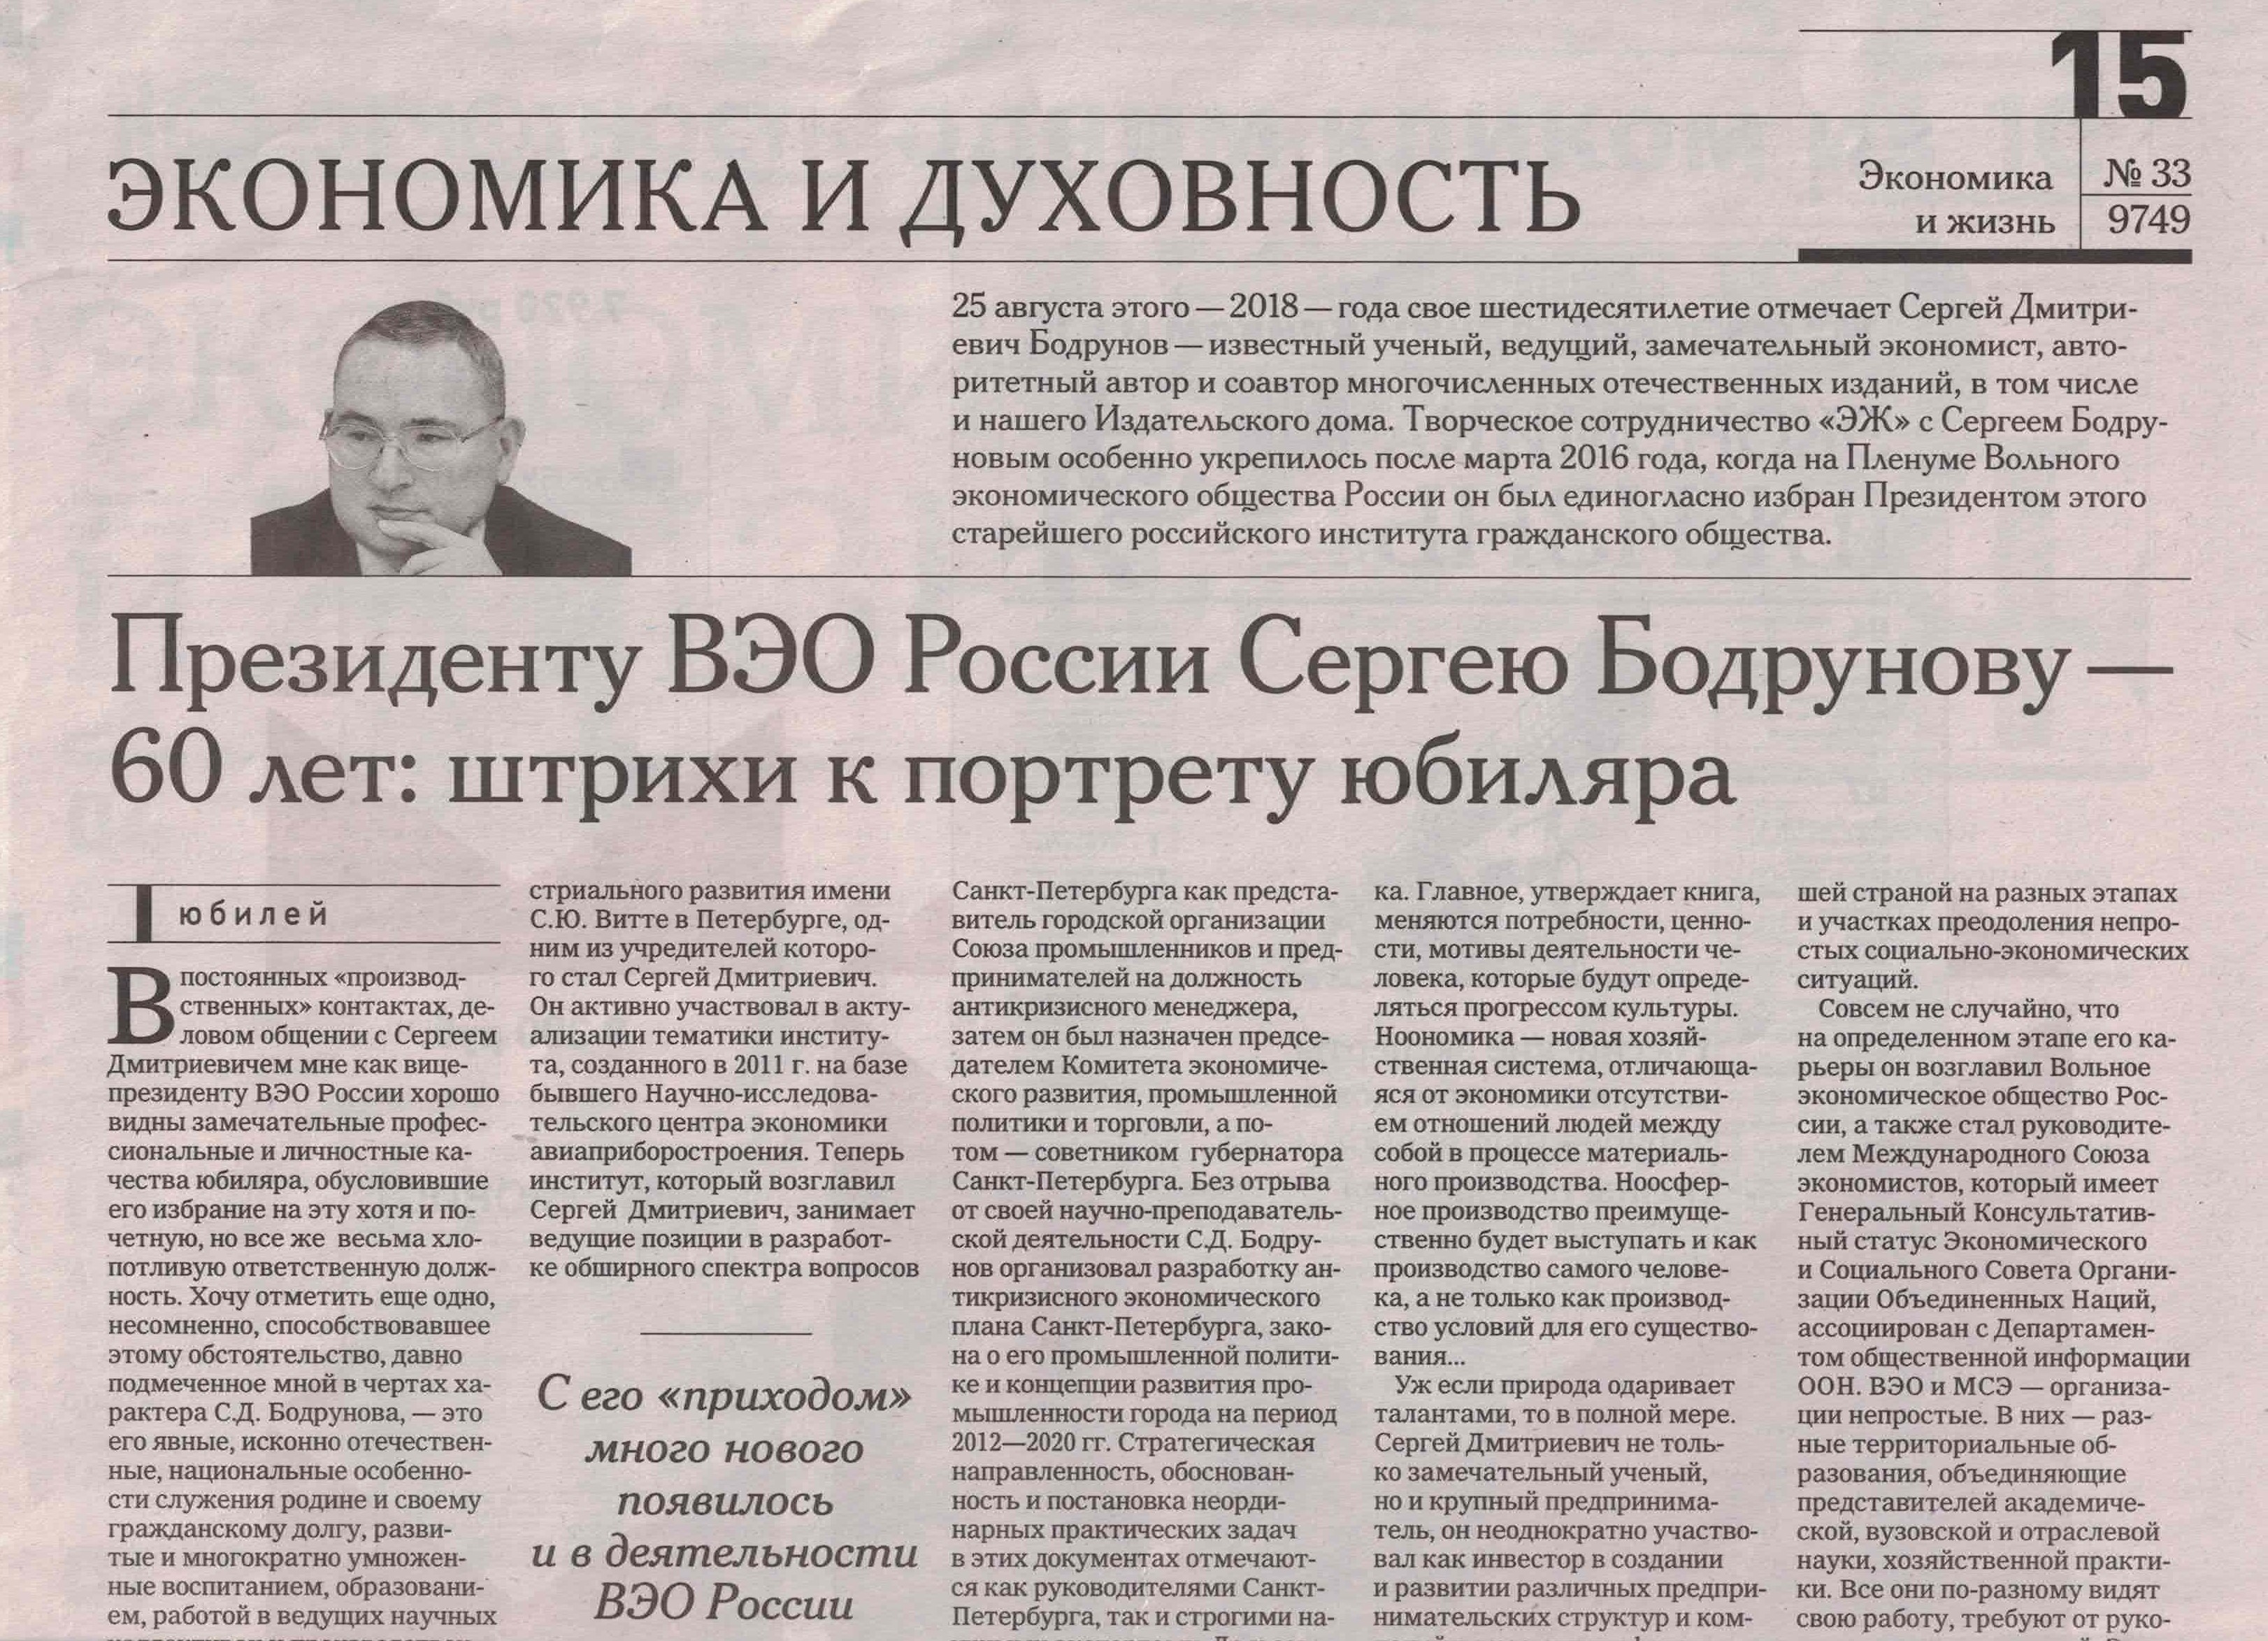 Газета «Экономика и жизнь» поздравила с юбилеем президента ВЭО России